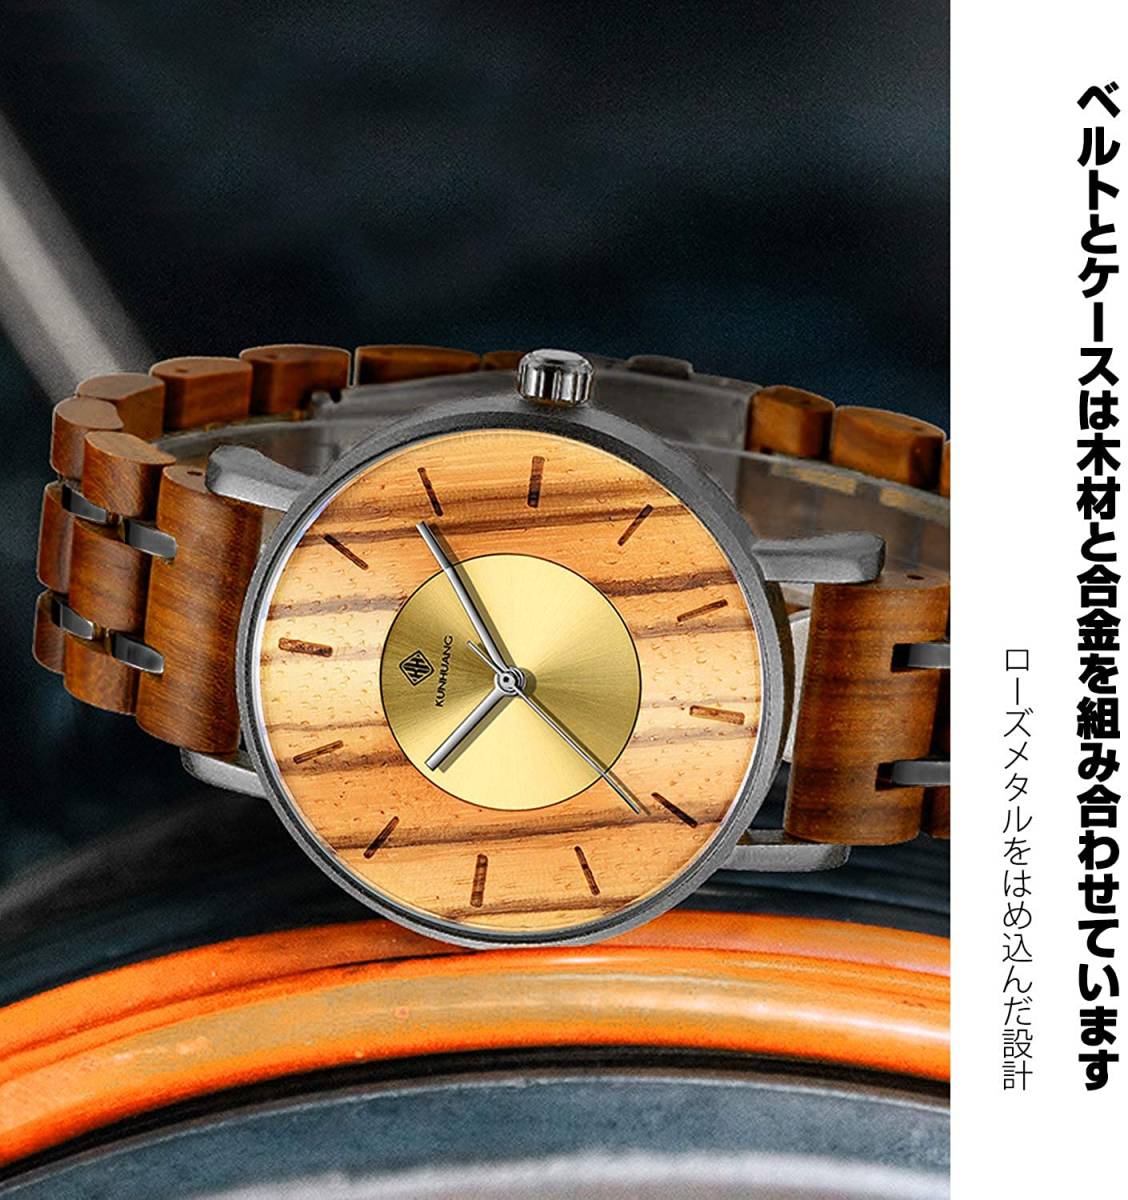 高品質な 木製腕時計 イエロー 日本製 クオーツ メンズ 天然木 木製 ウォッチ カジュアル ウッド オシャレ モダン 男性 腕時計 プレゼント